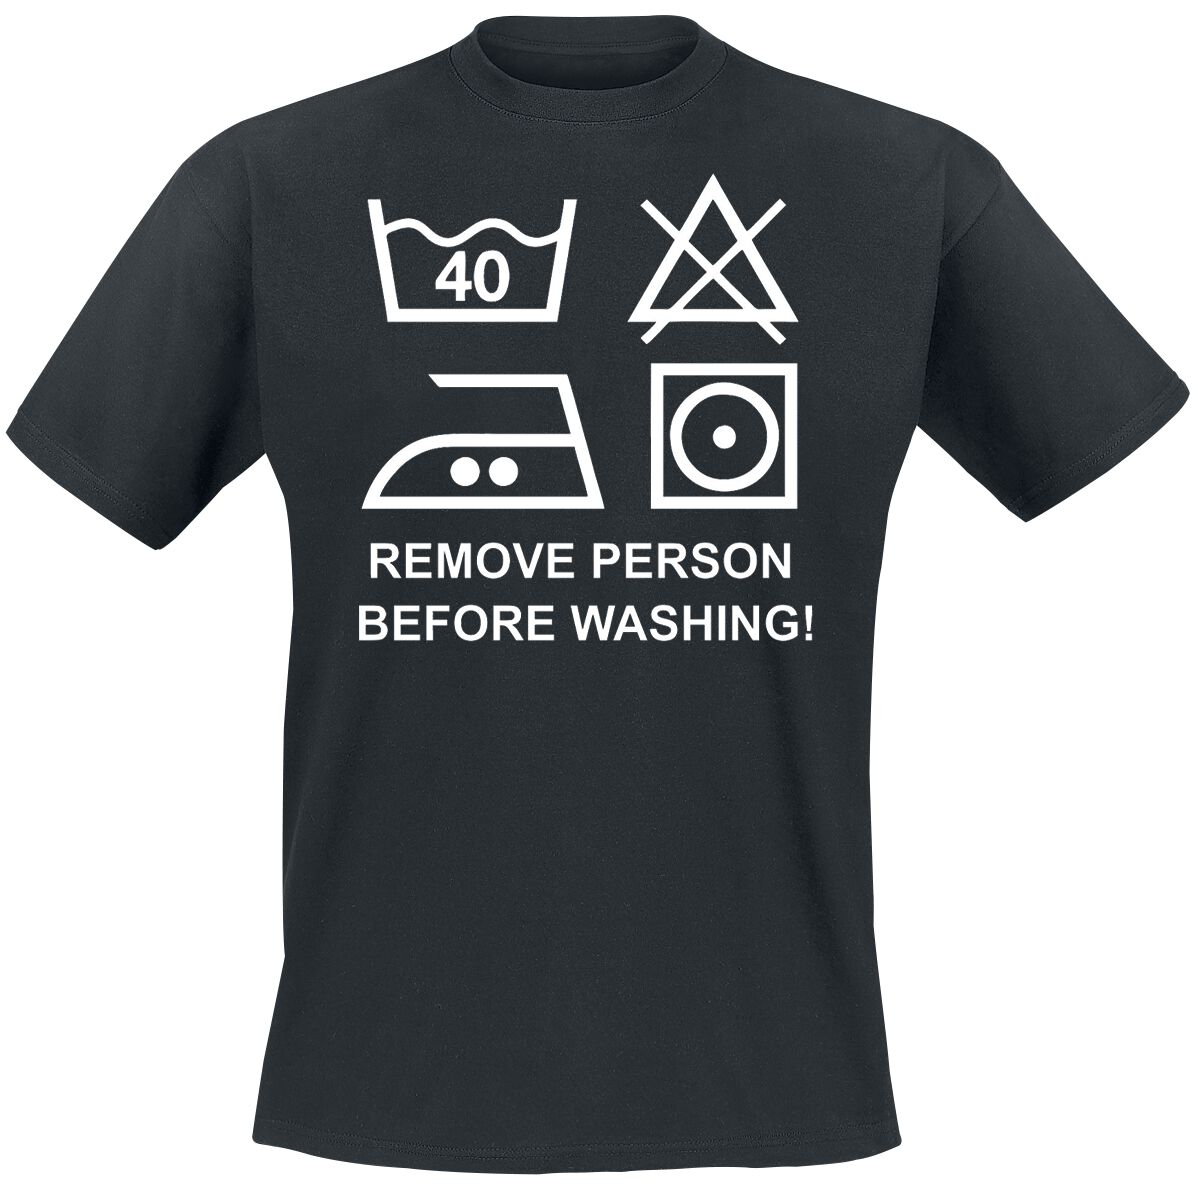 Sprüche T-Shirt - Remove Person Before Washing! - M bis 4XL - für Männer - Größe 4XL - schwarz